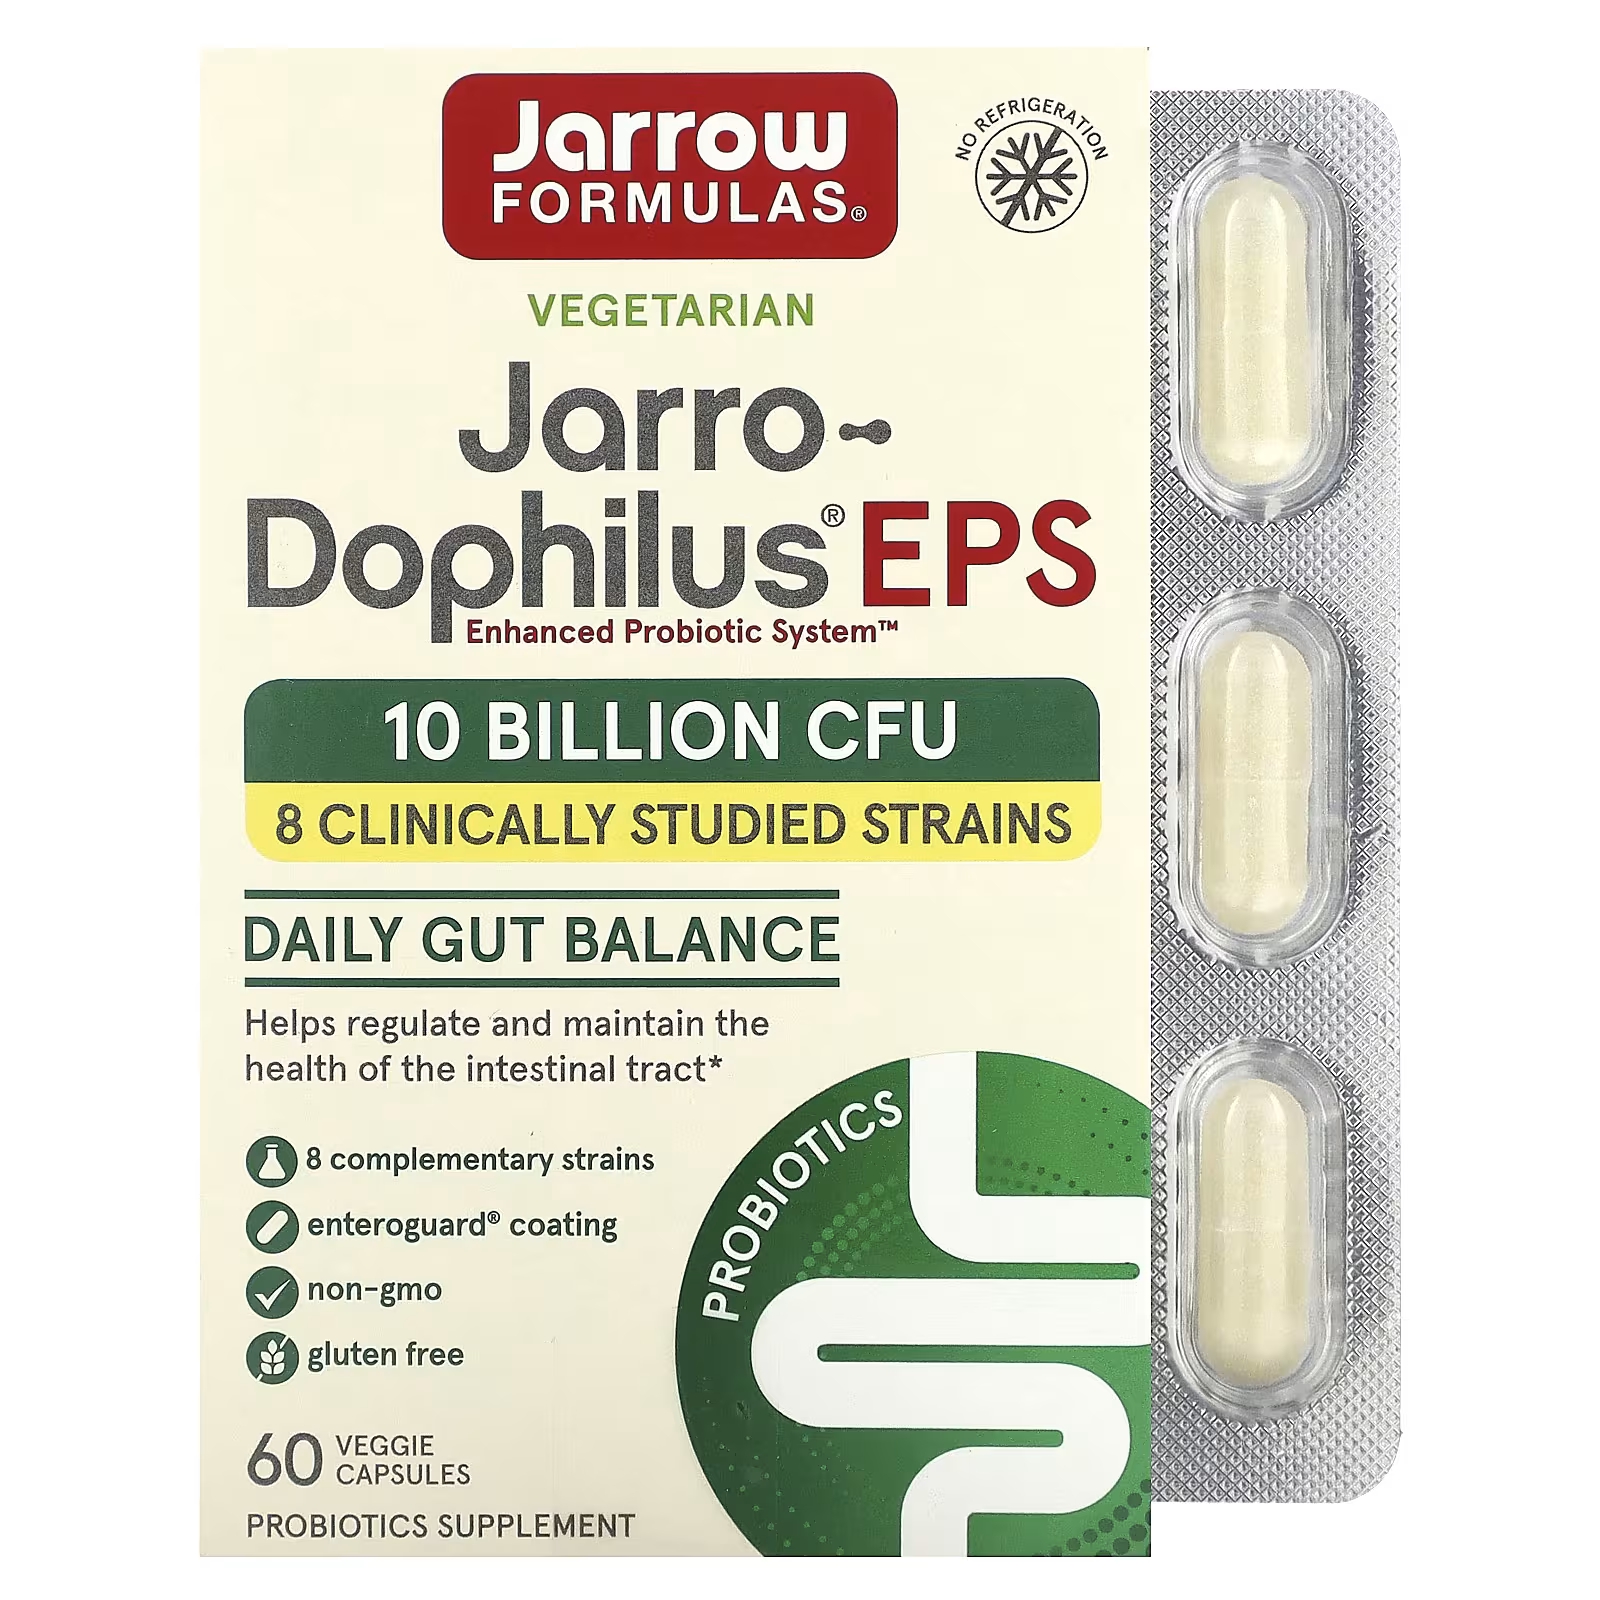 jarro dophilus eps пробиотик jarrow formulas 120 капсул Добавка с пробиотиком Jarrow Formulas Jarro-Dophilus EPS, 60 растительных капсул